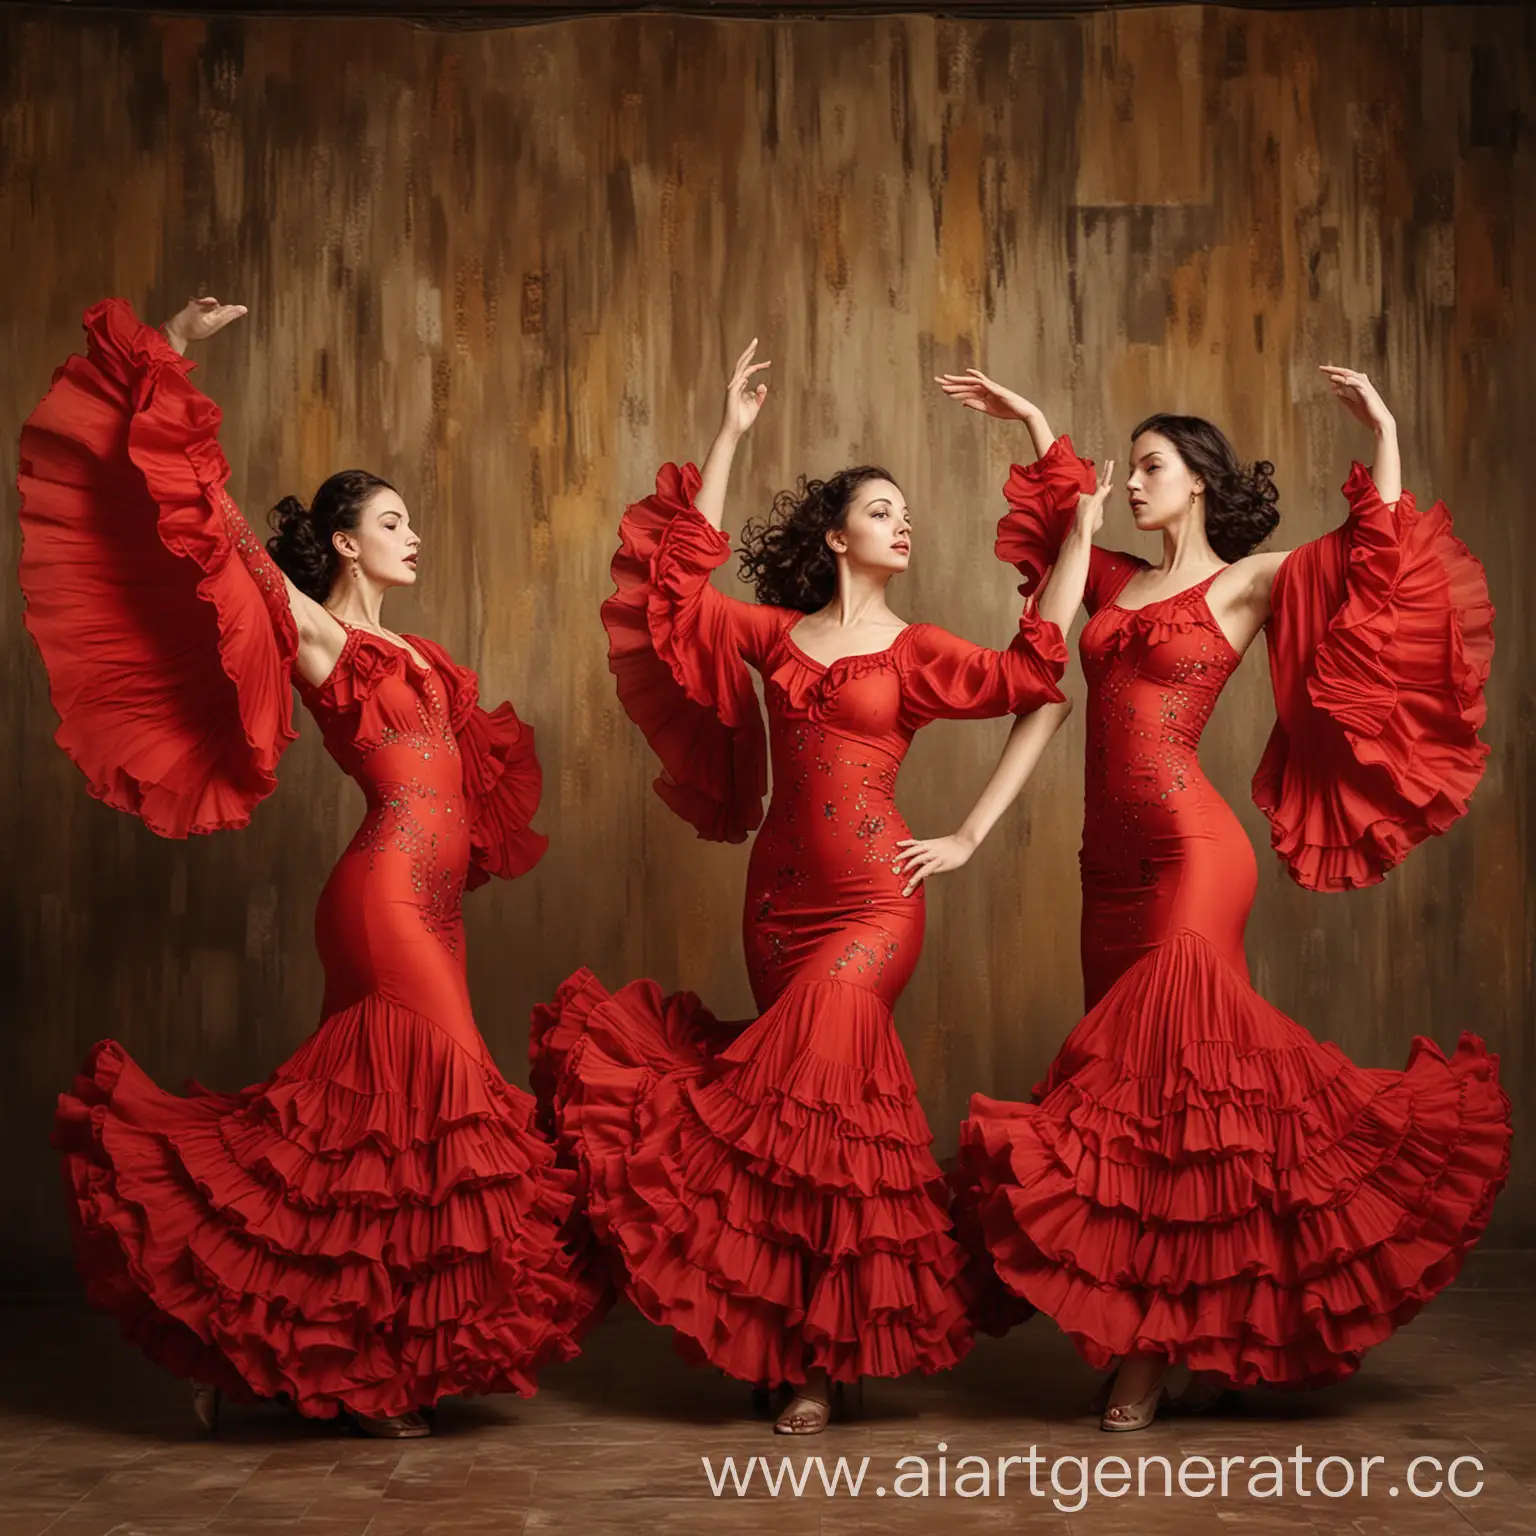 Passionate-Flamenco-Dance-Three-Beautiful-Girls-in-Spanish-Style